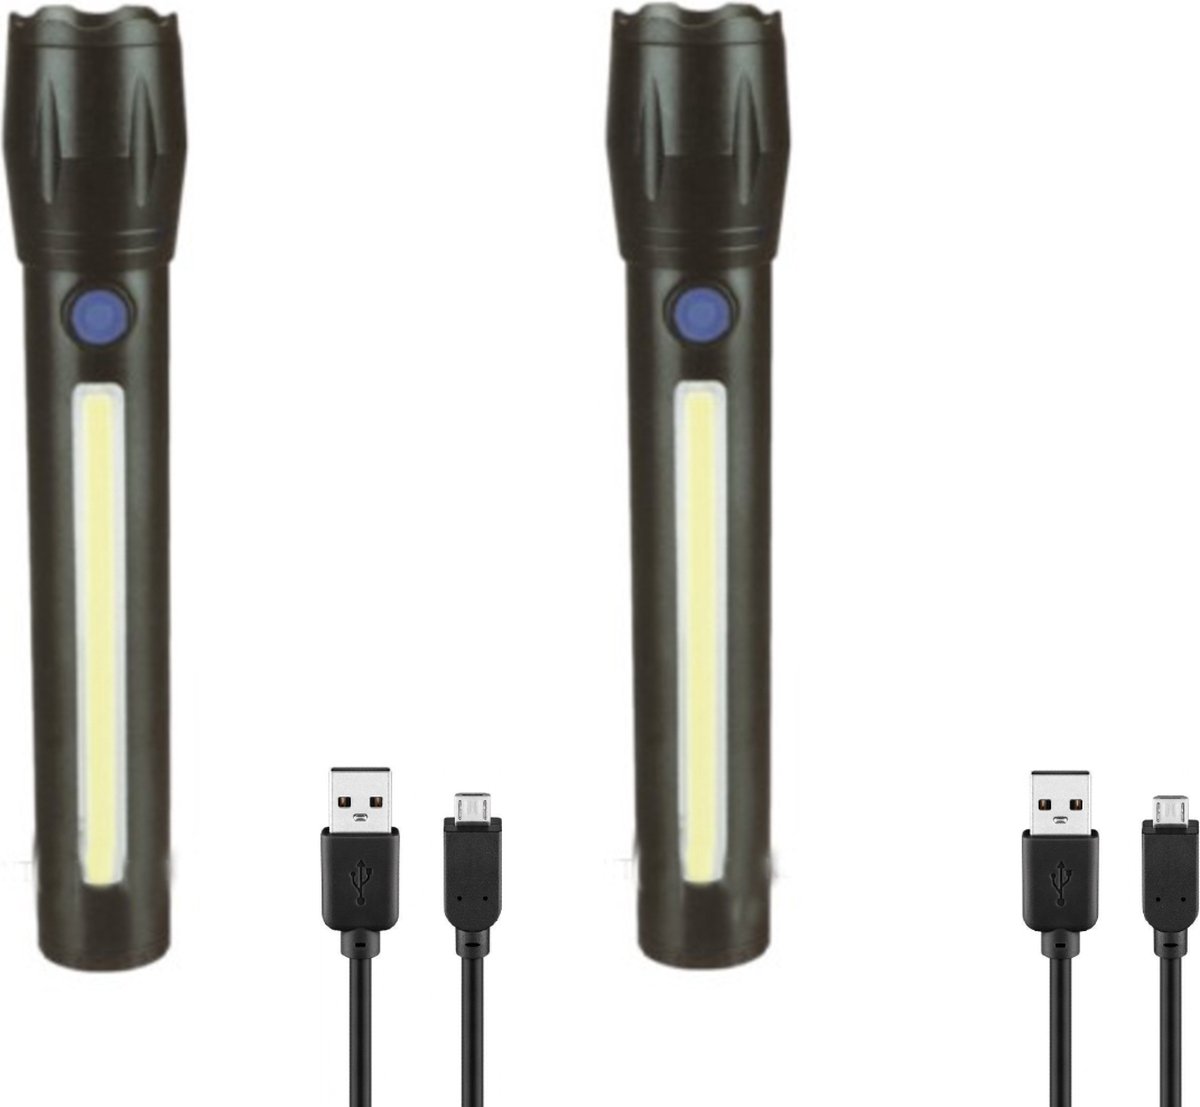 LED Zaklamp 2 Stuks - Zaklamp oplaadbaar - Inclusief kabel en batterij - met Zoomfunctie - 1500 Lumen - 166 MM lang - 1200 mAh - Zoomfunctie X2000